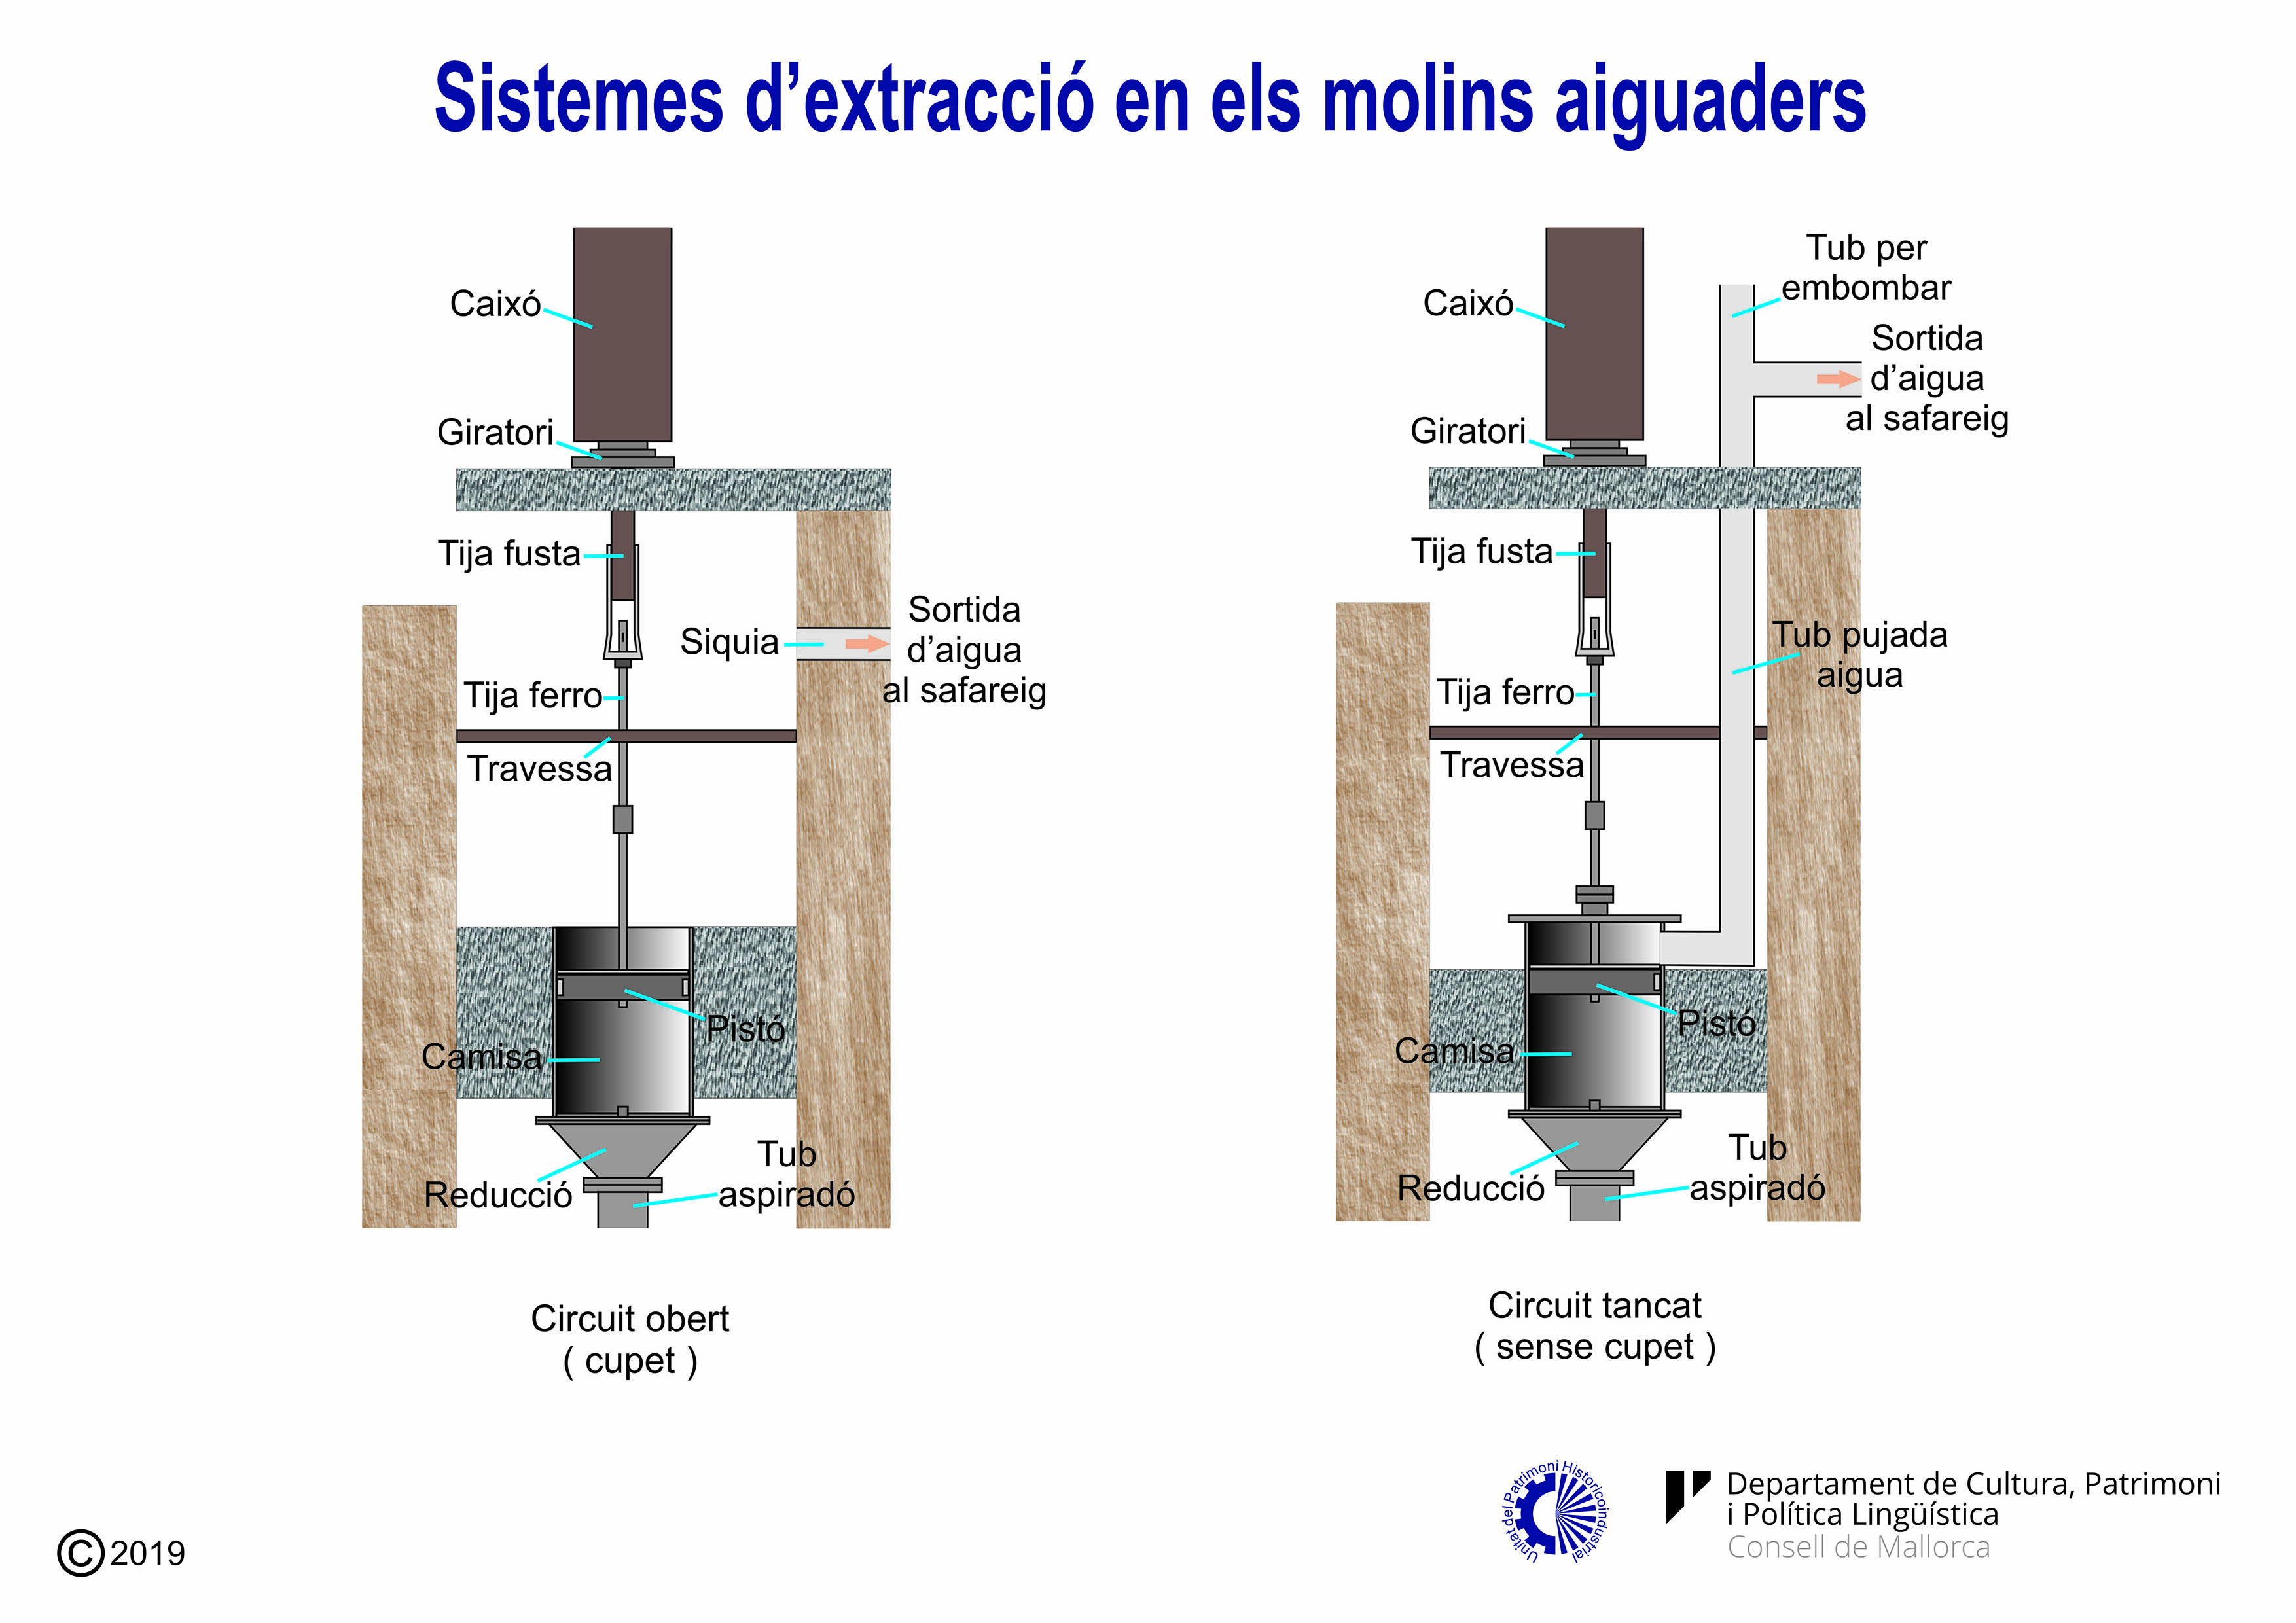 Sistemes d'extracció d'aigua